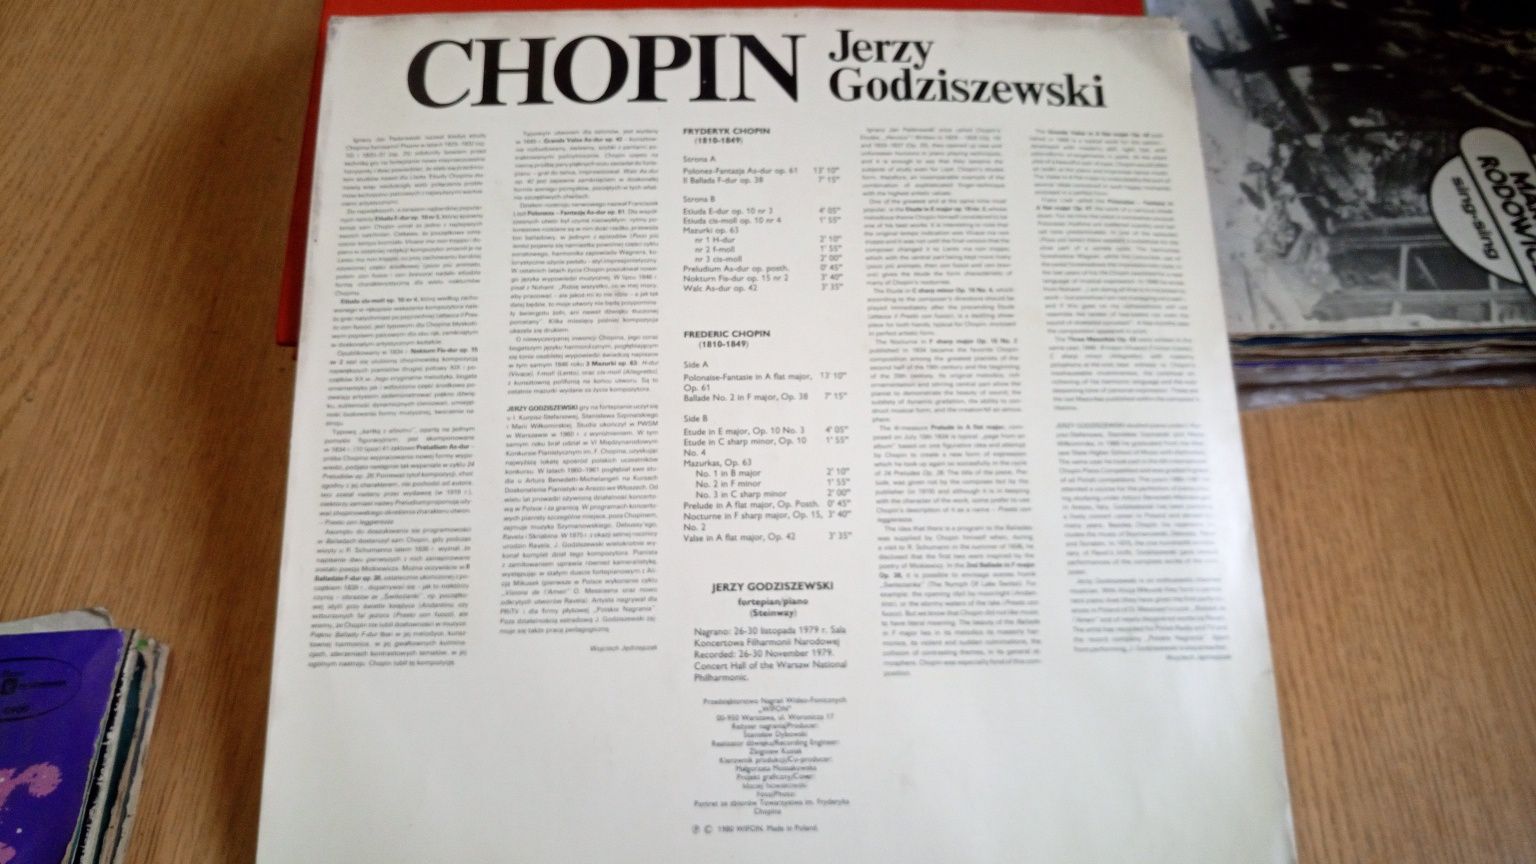 Chopin Jerzego Godziszewski